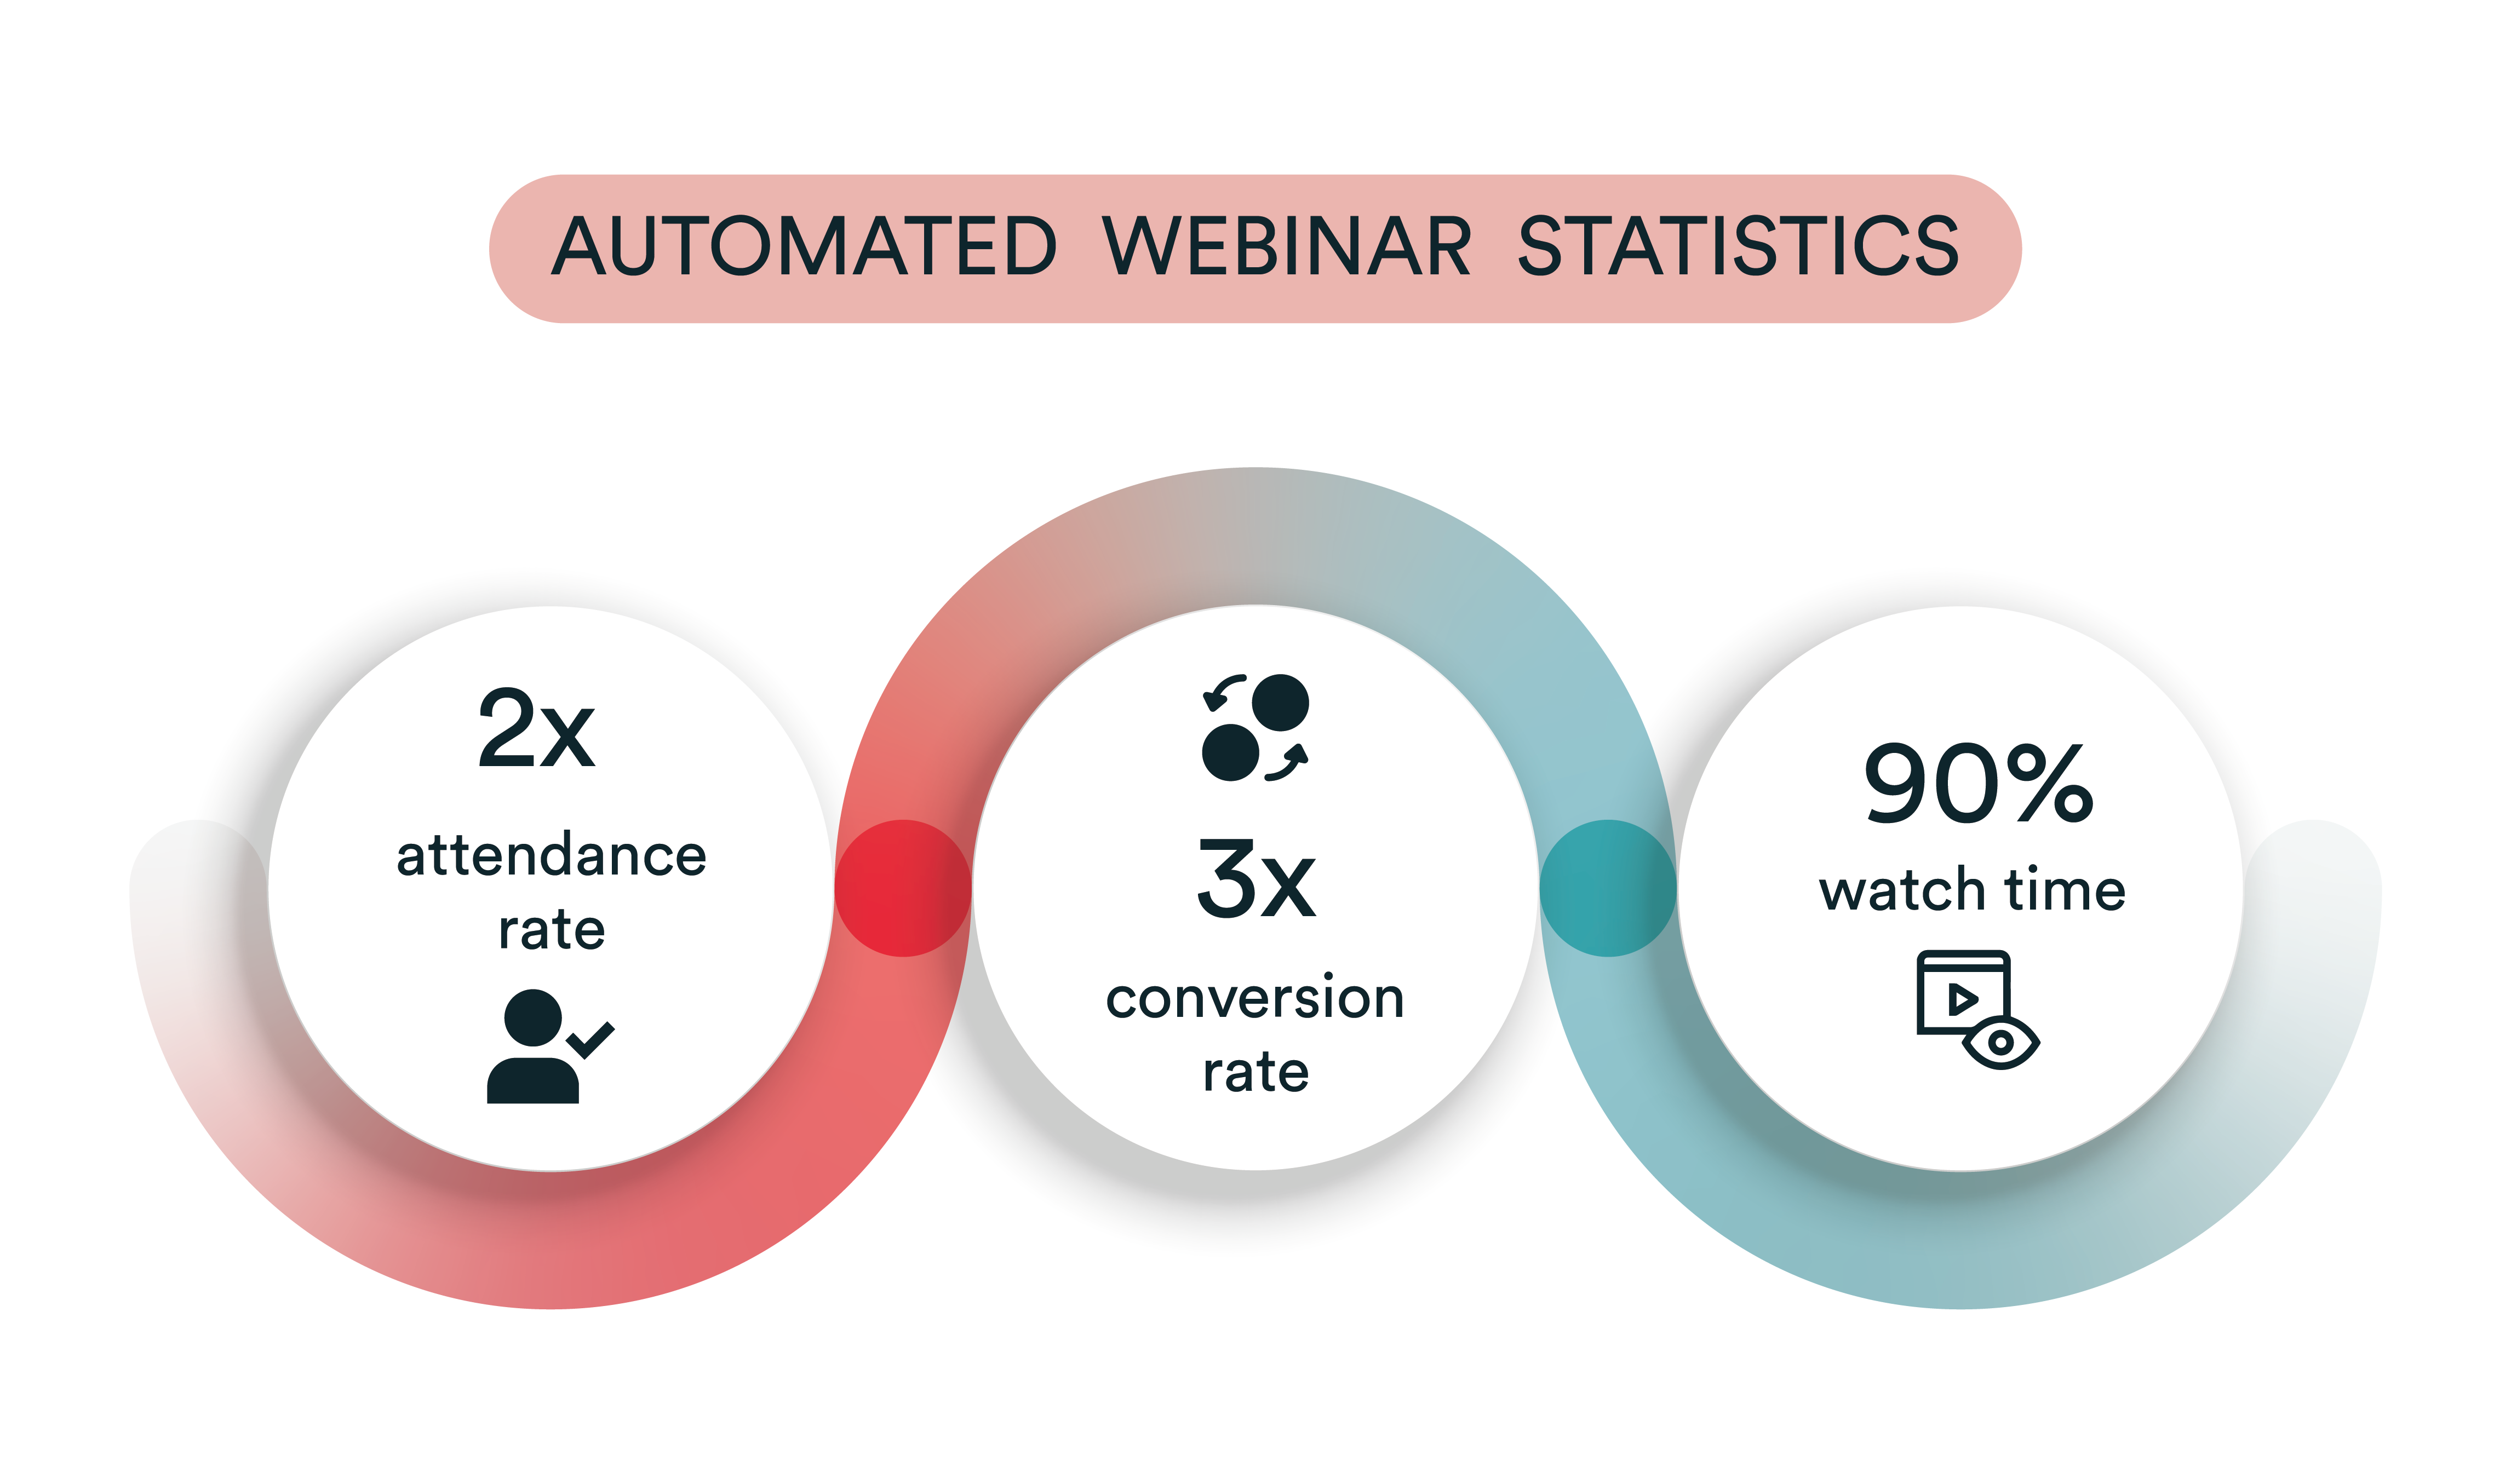 Ilustración automatizada de estadísticas de seminarios web que muestra el doble de índice de asistencia, el triple de índice de conversión y el 90% de tiempo de visionado.